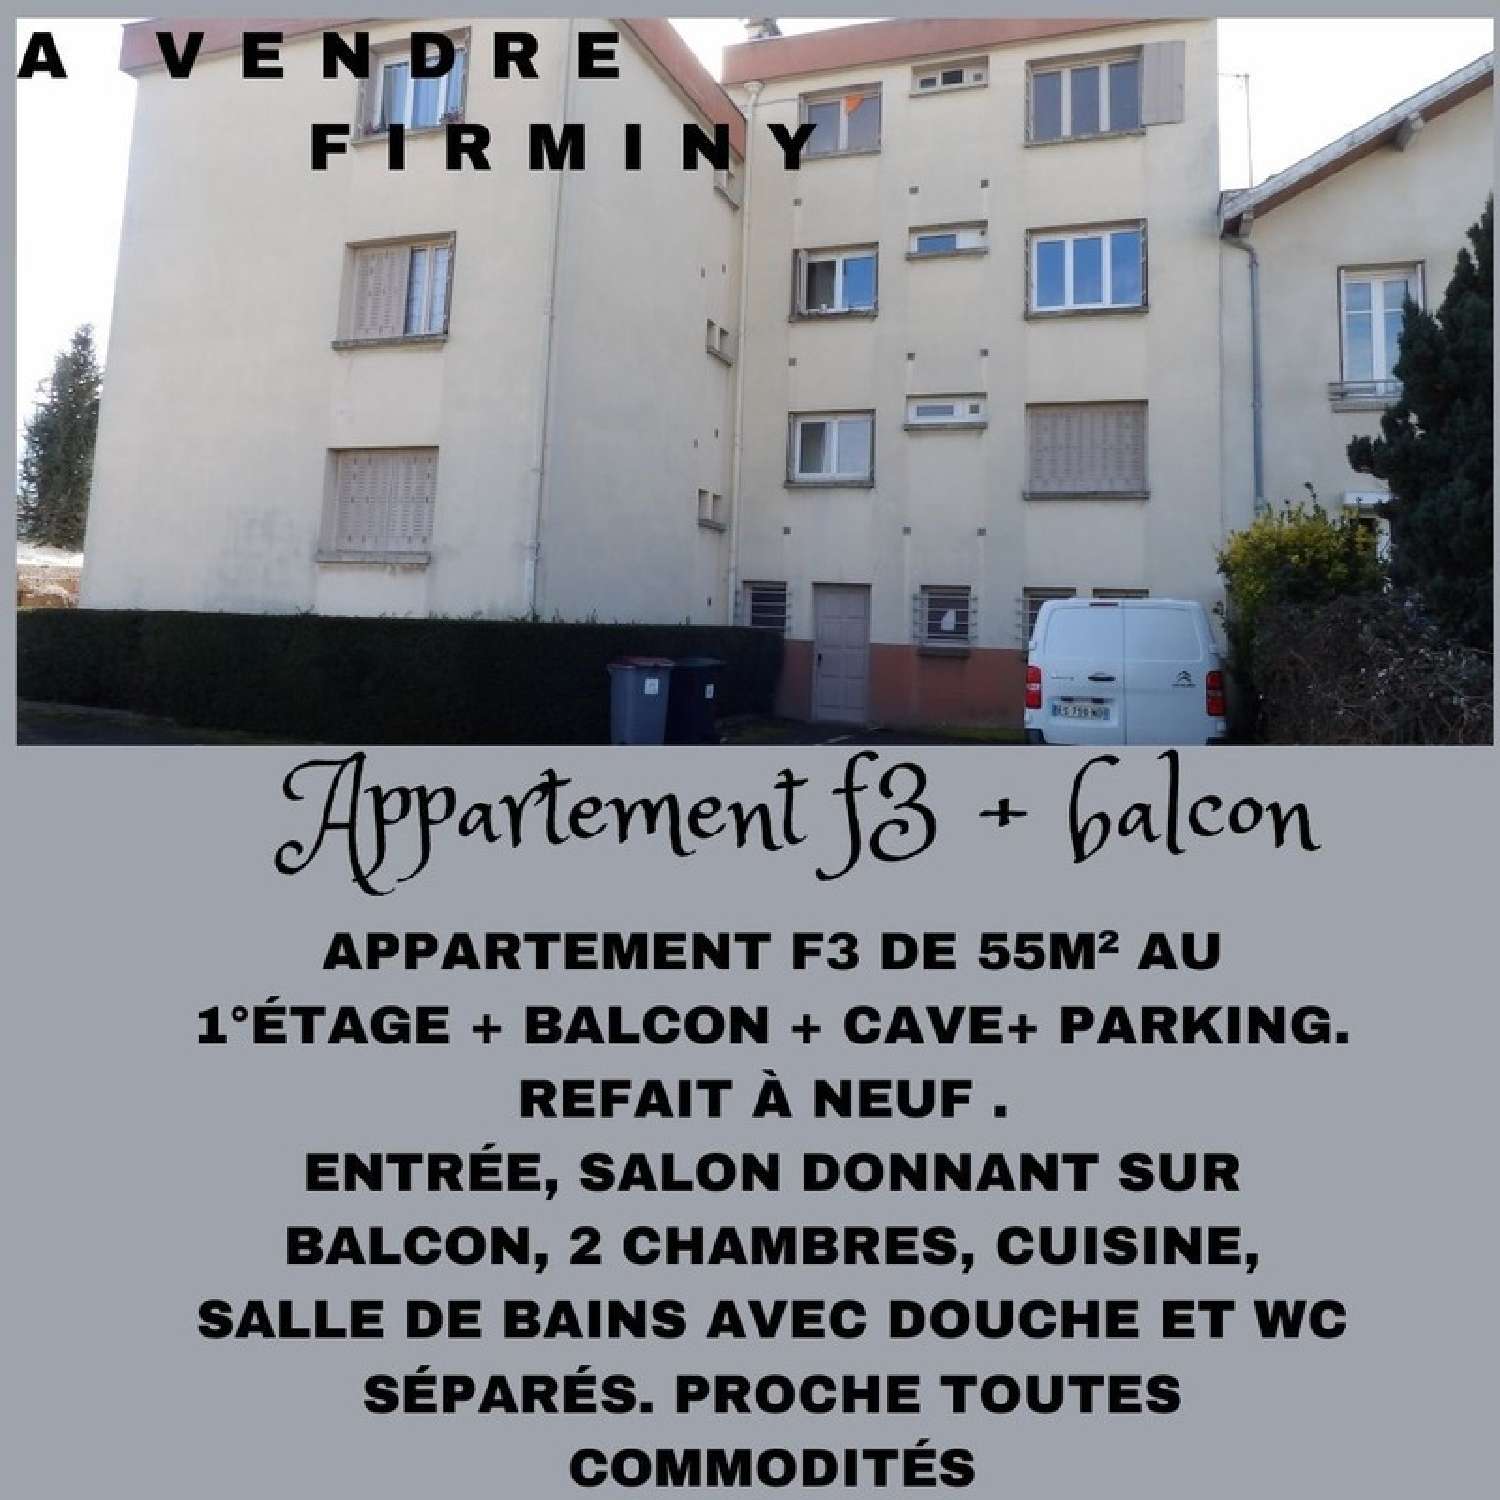 Firminy Loire apartment foto 6798233